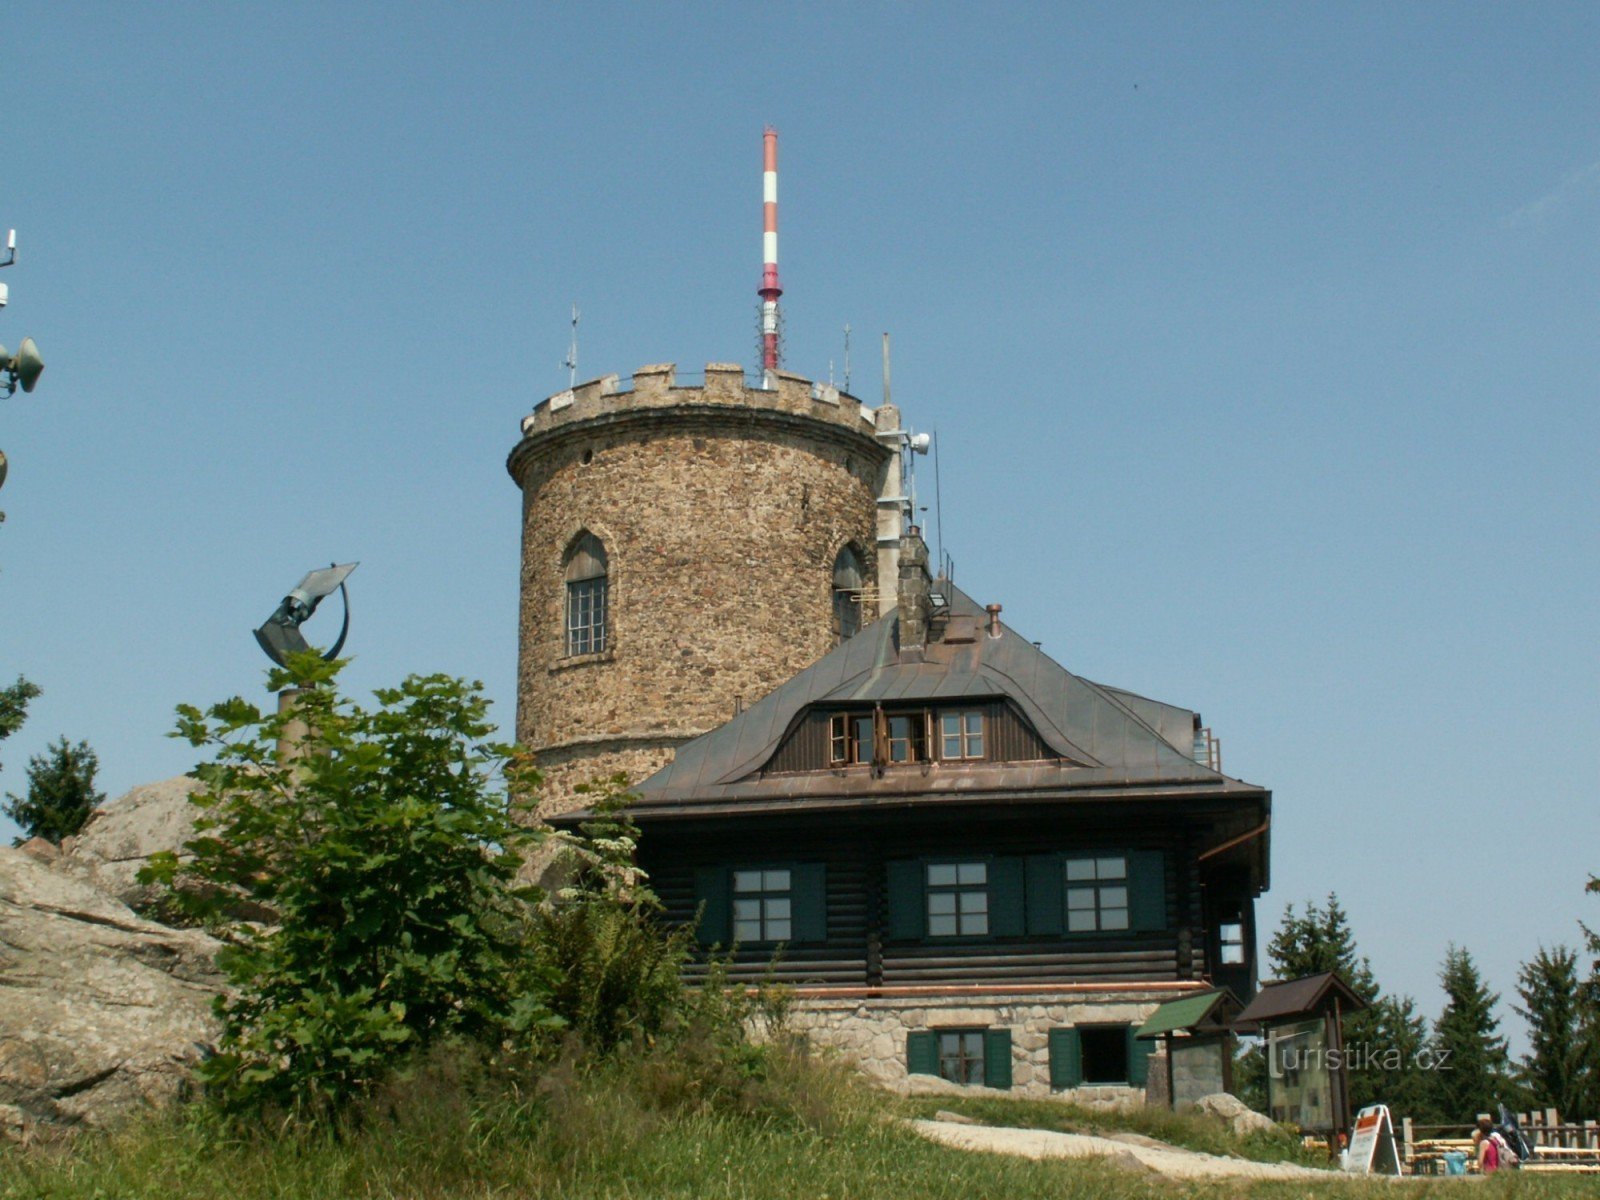 Kleť observation tower